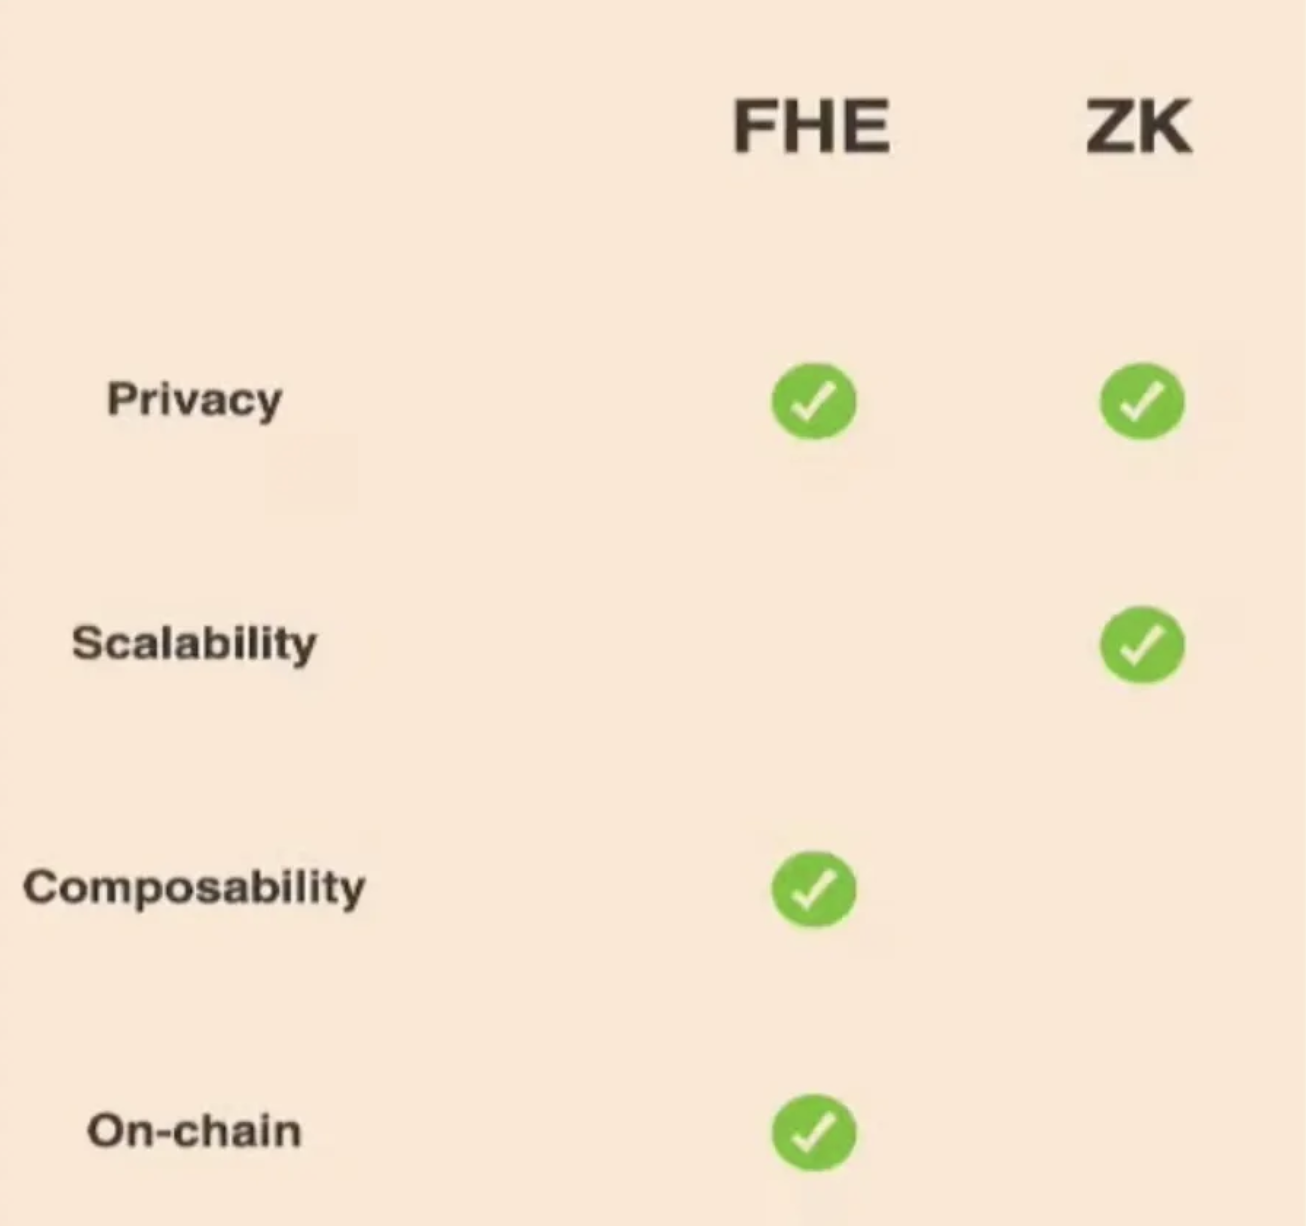 揭秘FHE技術：探索零知識技術以外的資料隱私方案